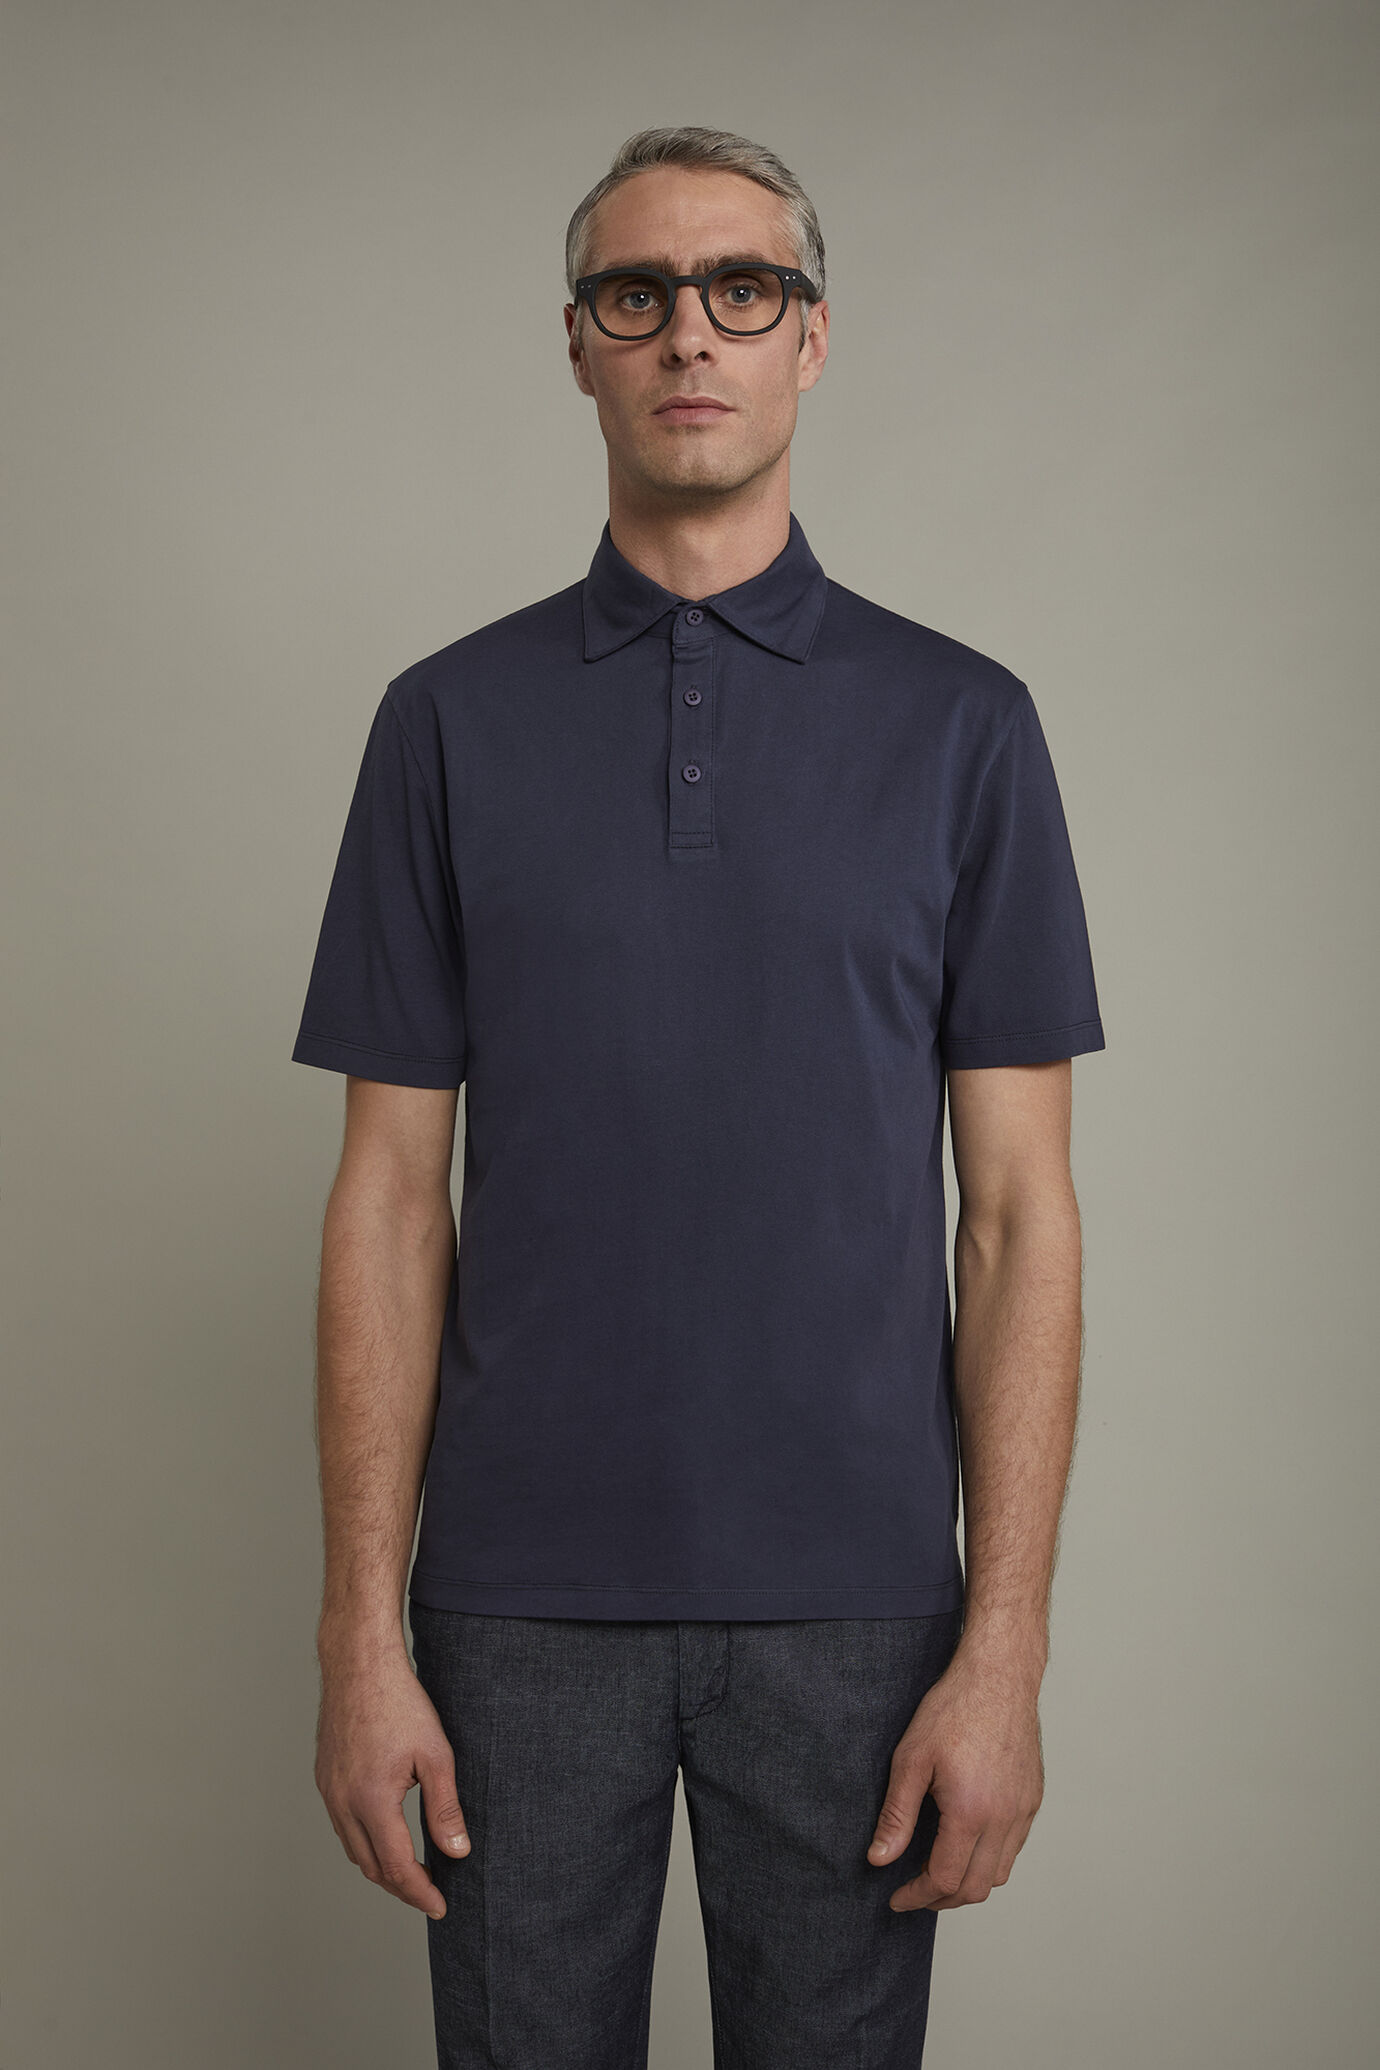 Men’s short sleeve polo shirt 100% cotton regular fit